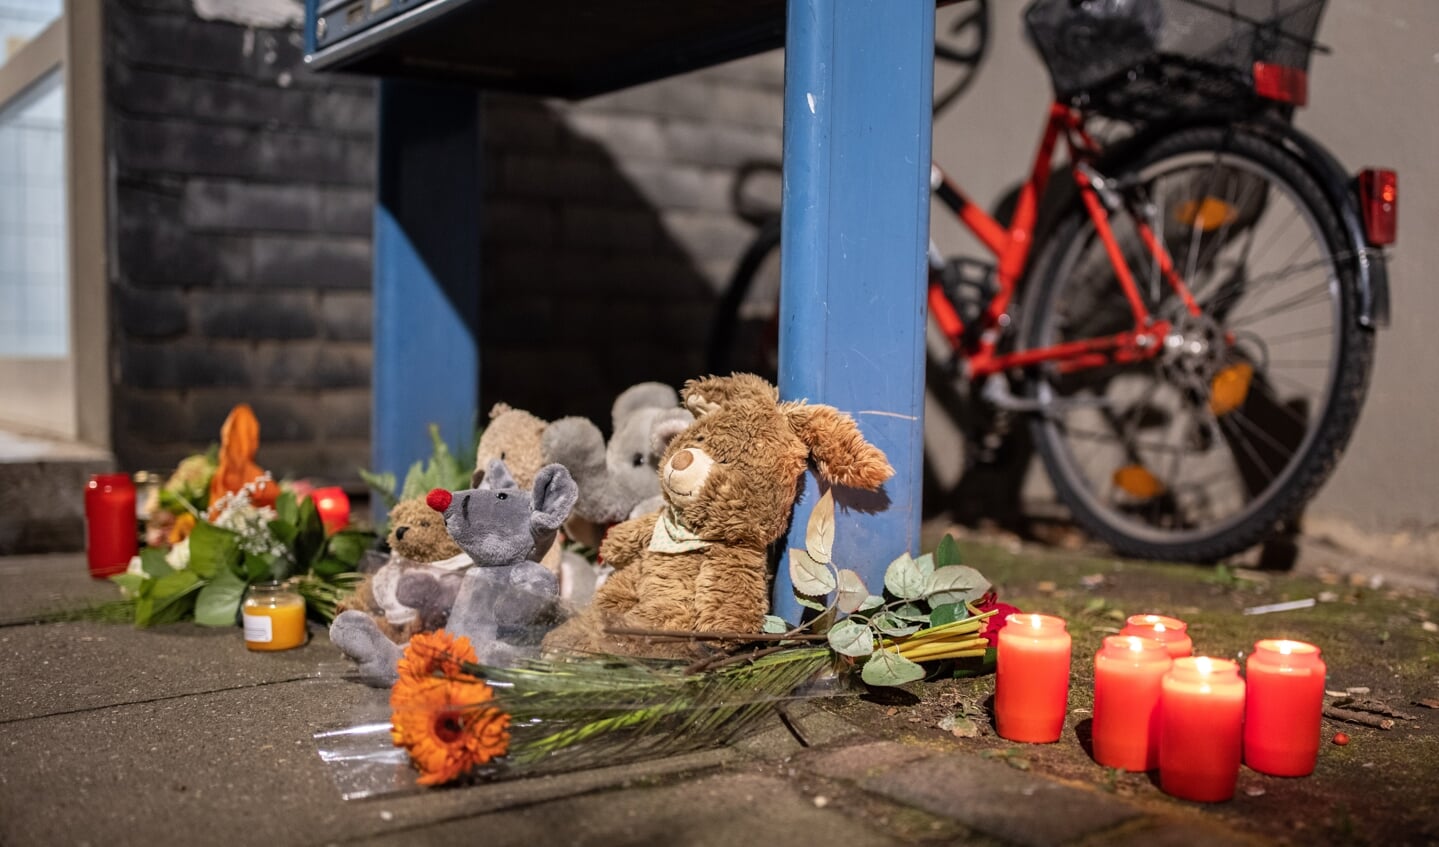 Borgere har placeret stearinlys, blomster og legetøj ved indgangen til den etageejendom, hvor de fem børn blev fundet. 